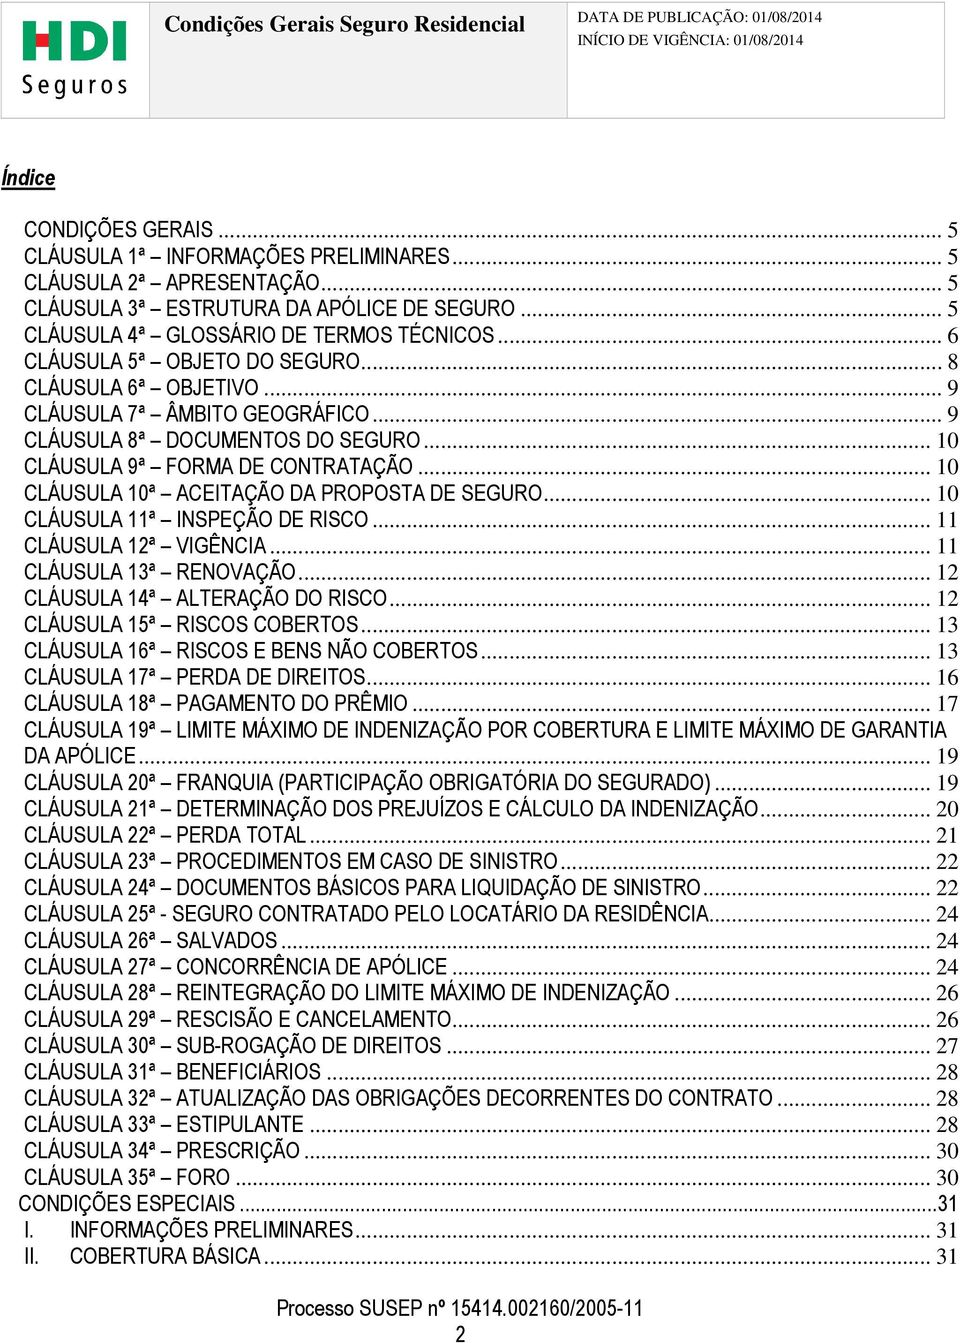 .. 10 CLÁUSULA 10ª ACEITAÇÃO DA PROPOSTA DE SEGURO... 10 CLÁUSULA 11ª INSPEÇÃO DE RISCO... 11 CLÁUSULA 12ª VIGÊNCIA... 11 CLÁUSULA 13ª RENOVAÇÃO... 12 CLÁUSULA 14ª ALTERAÇÃO DO RISCO.